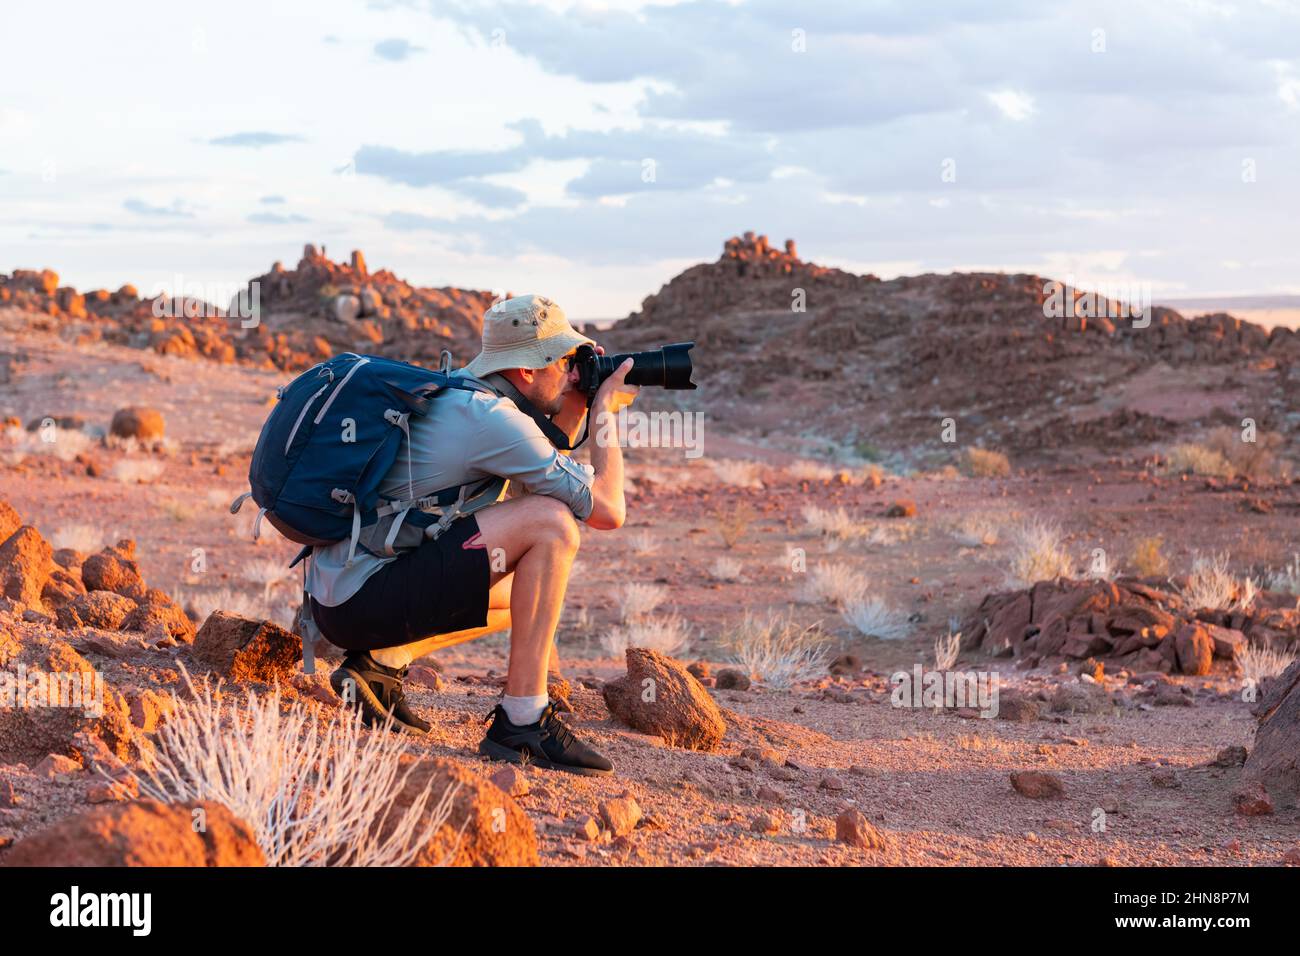 Fotograf, der in Felsen der Namib-Wüste, Namibia, Afrika fotografiert. Rote Berge und Sonnenuntergang Himmel im Hintergrund. Landschaftsfotografie Stockfoto